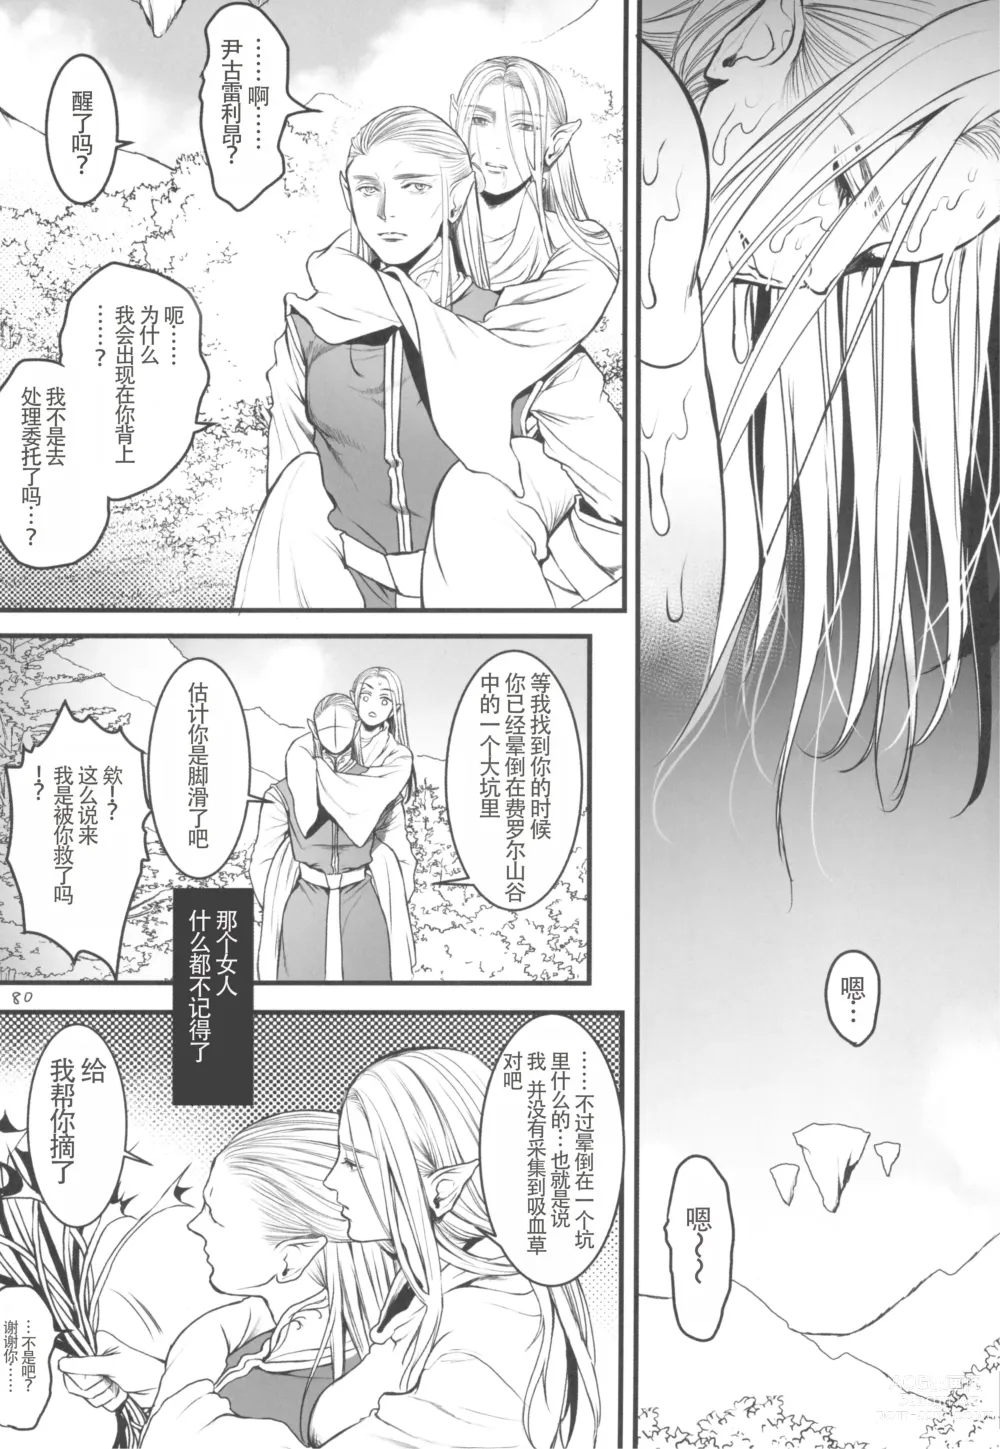 Page 83 of doujinshi Chika Teikoku no Ryoshuu